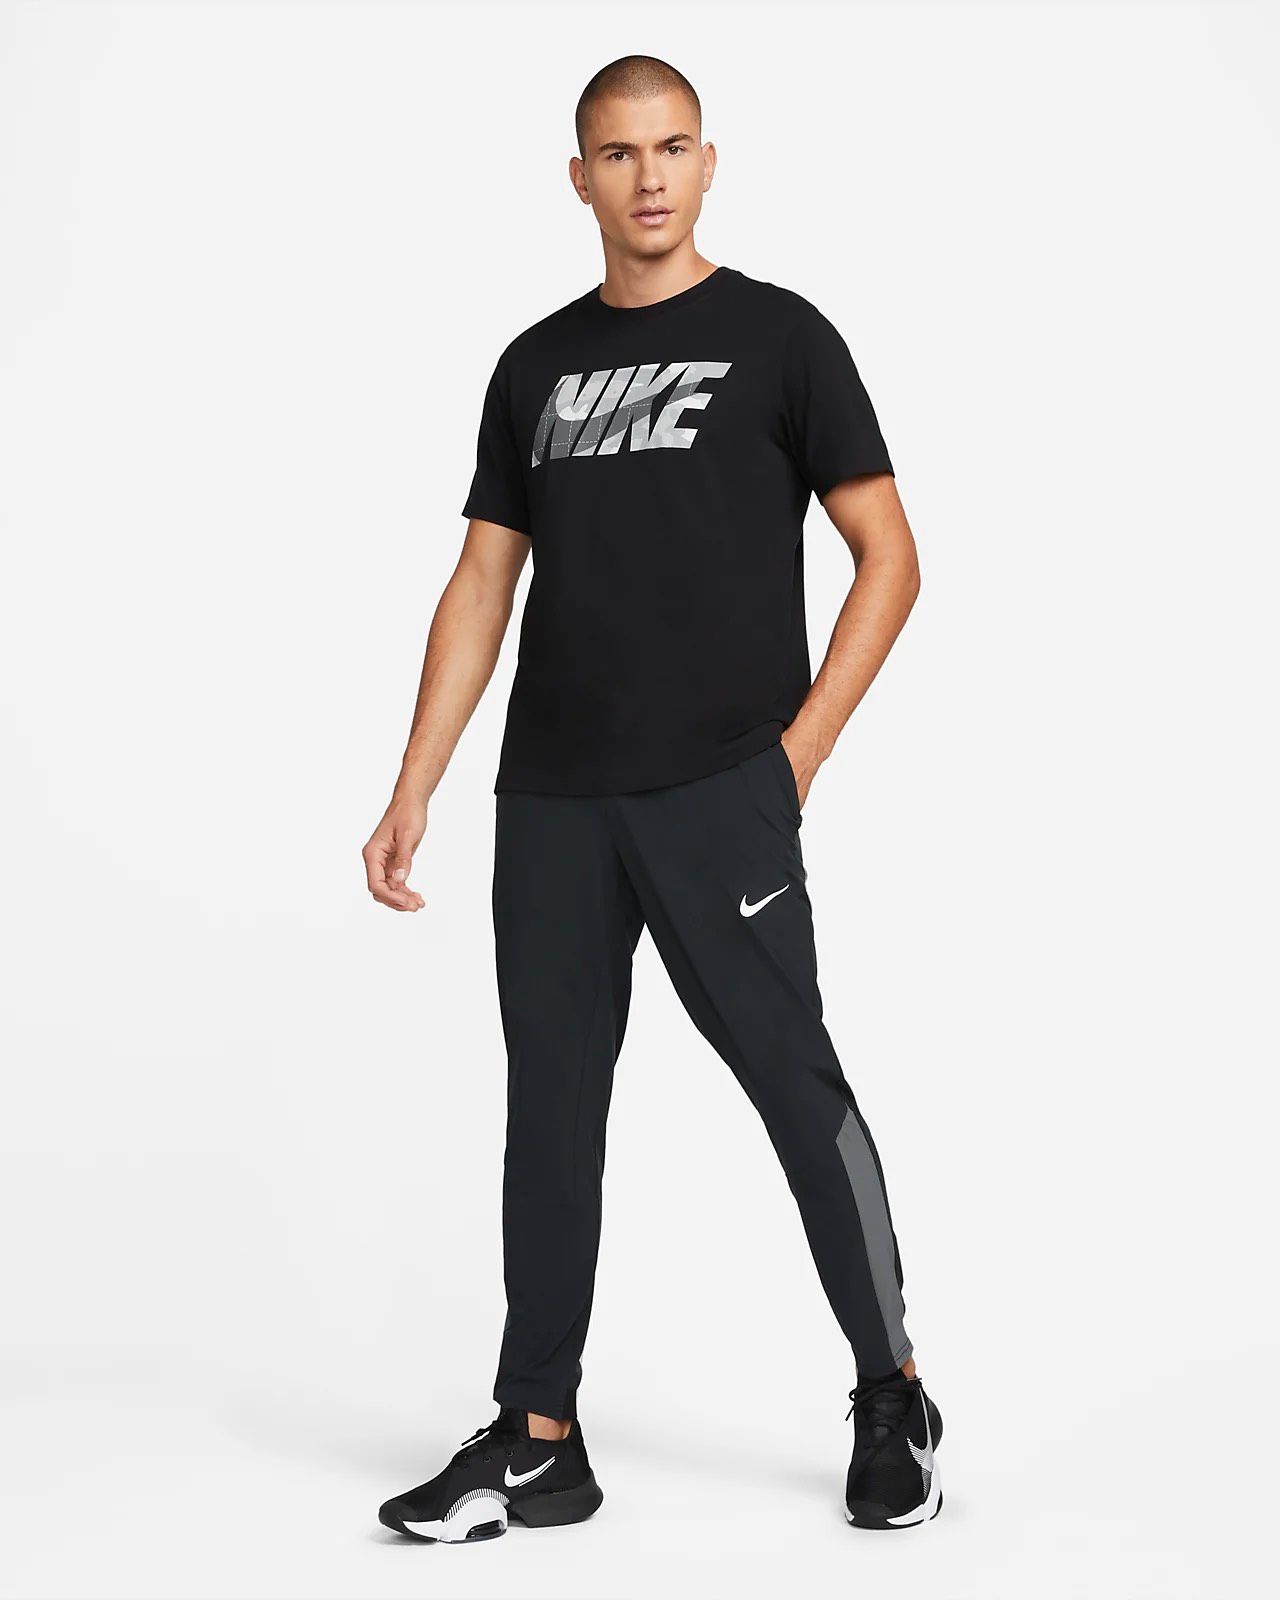  Jogger Nike Pro Vent Max DM5948-010 